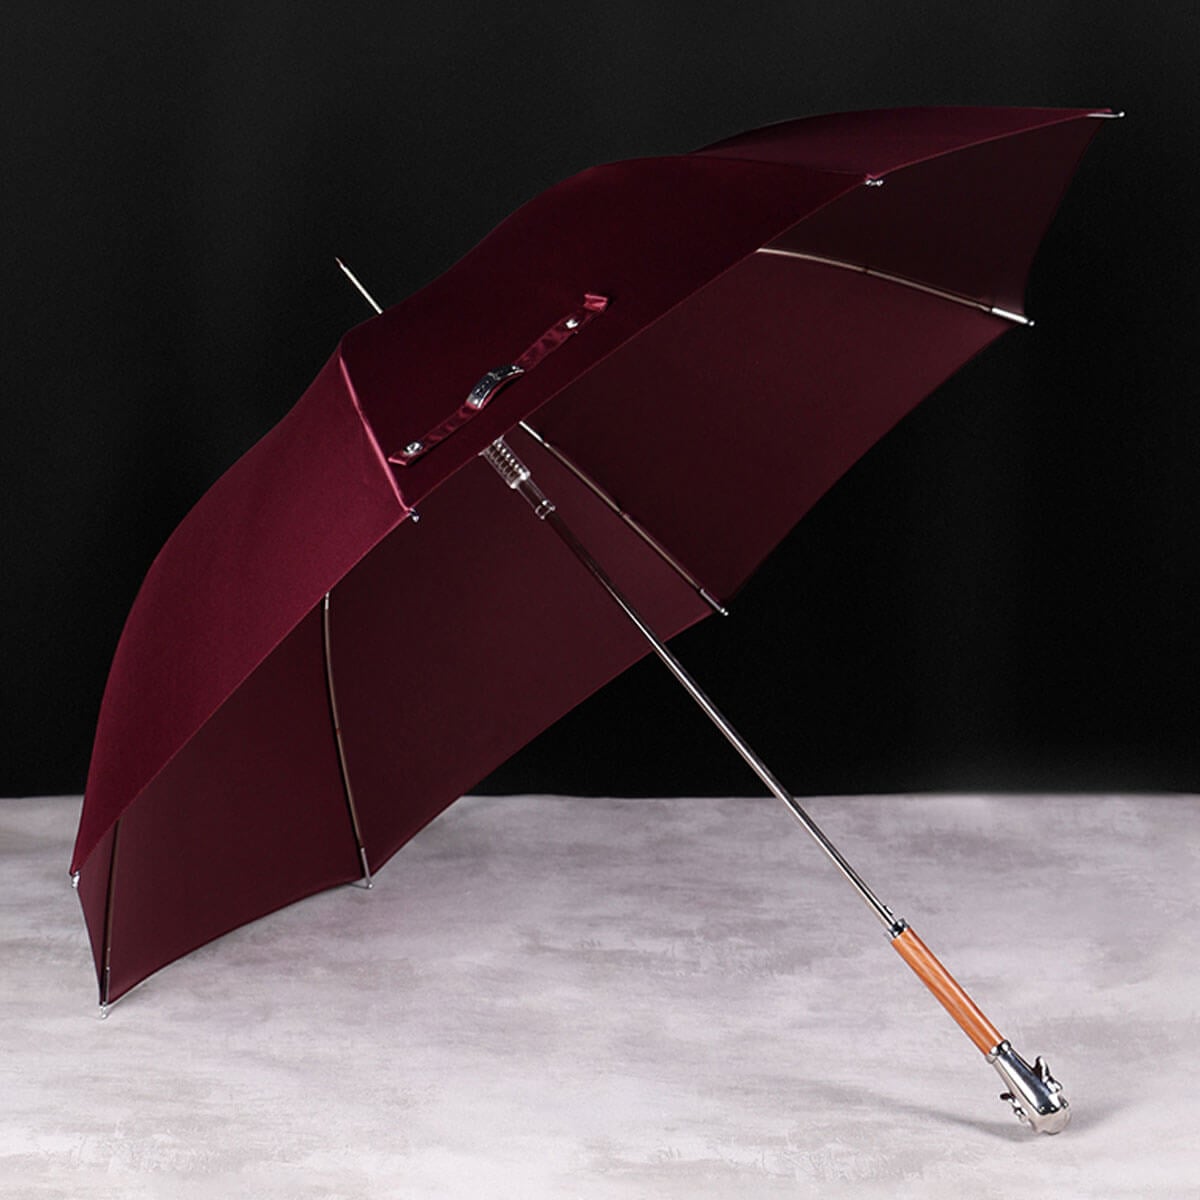 Wood Umbrellas Vs. Metal Umbrellas